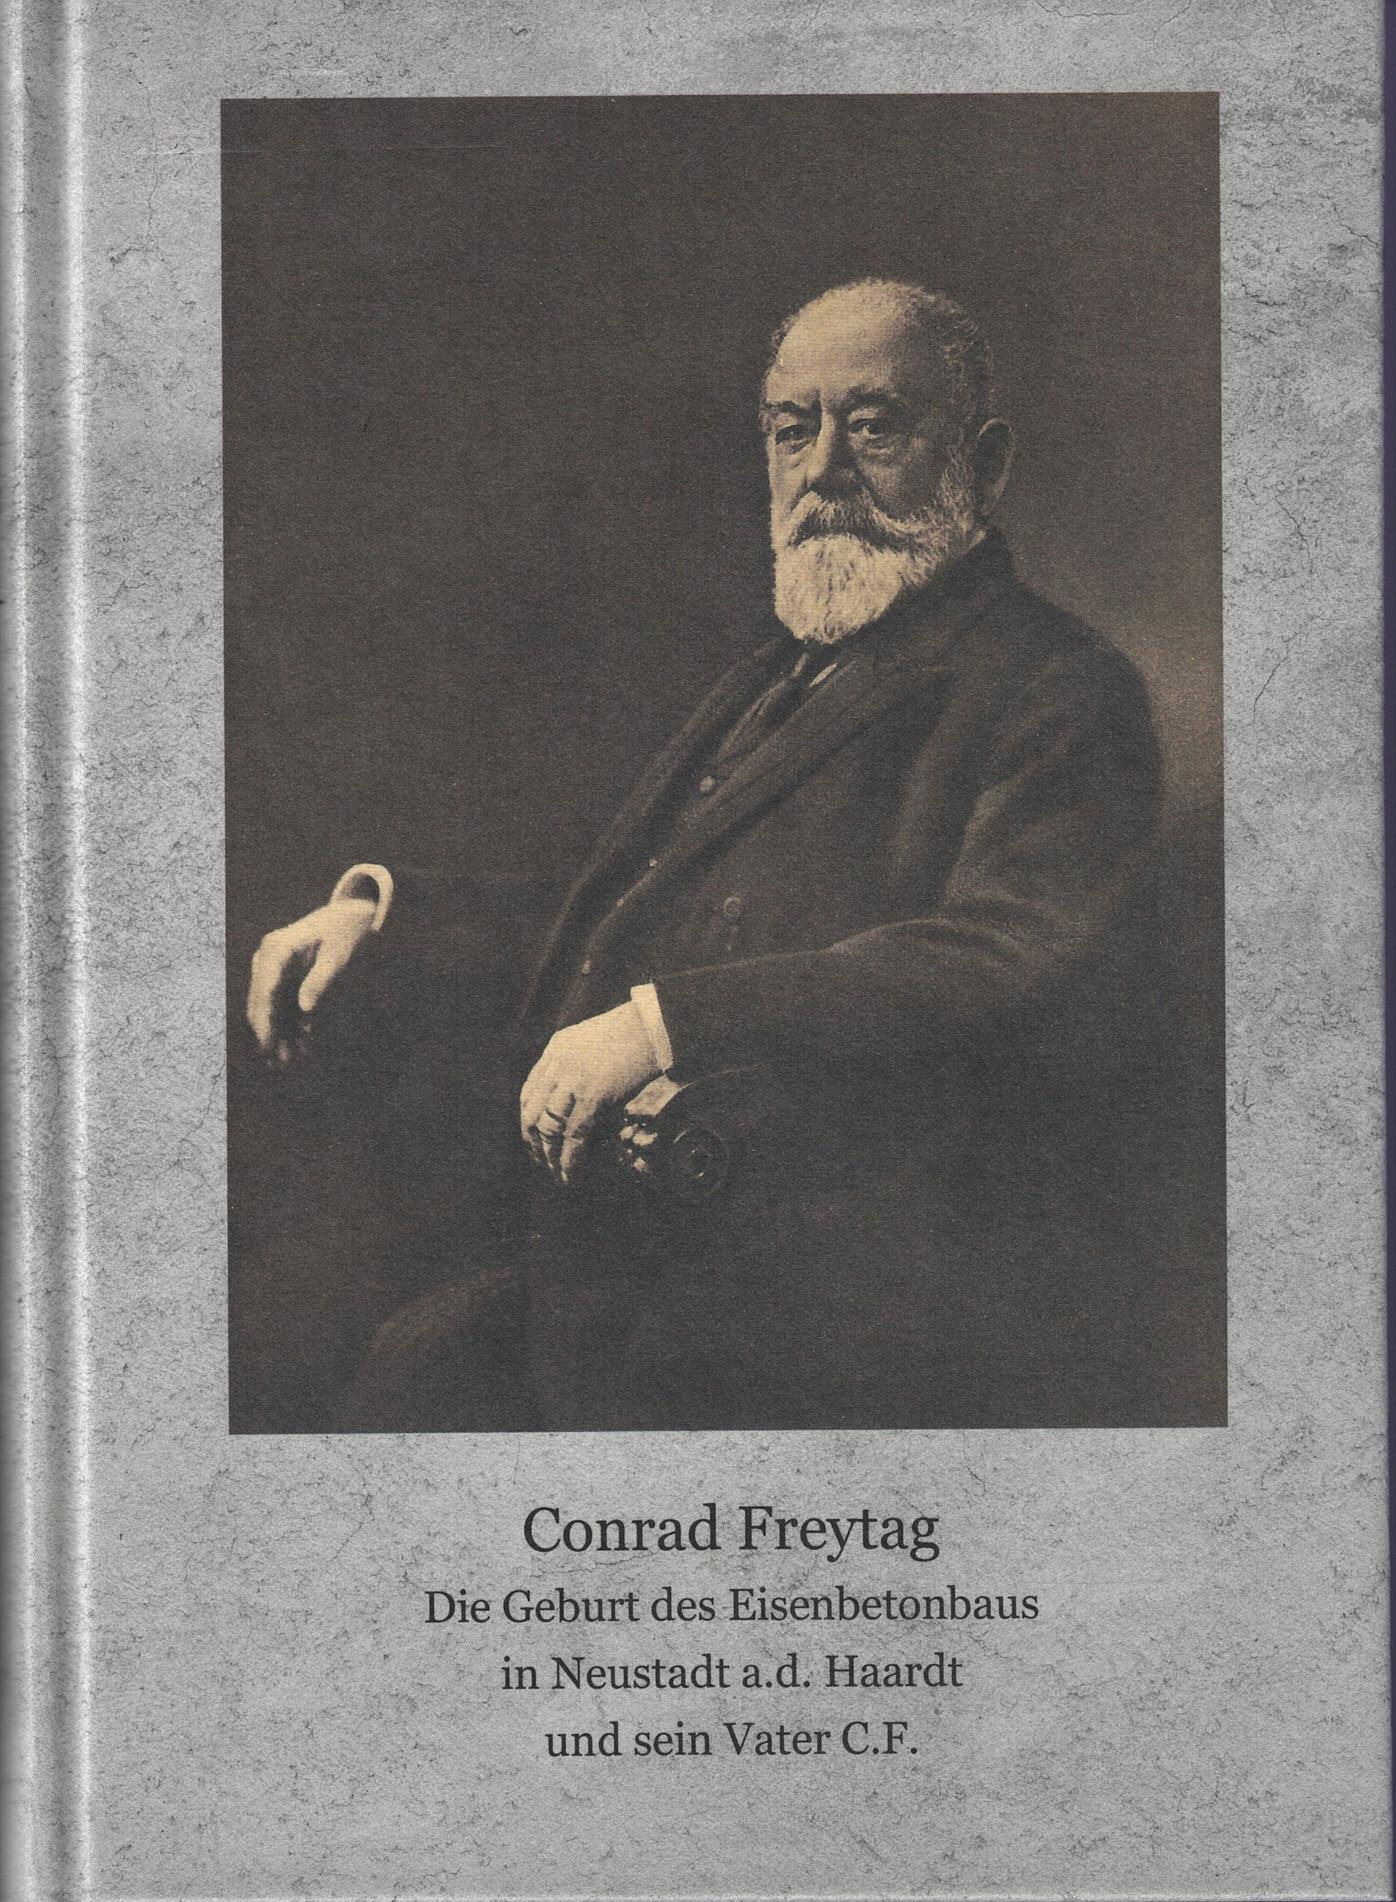 Conrad Freytag